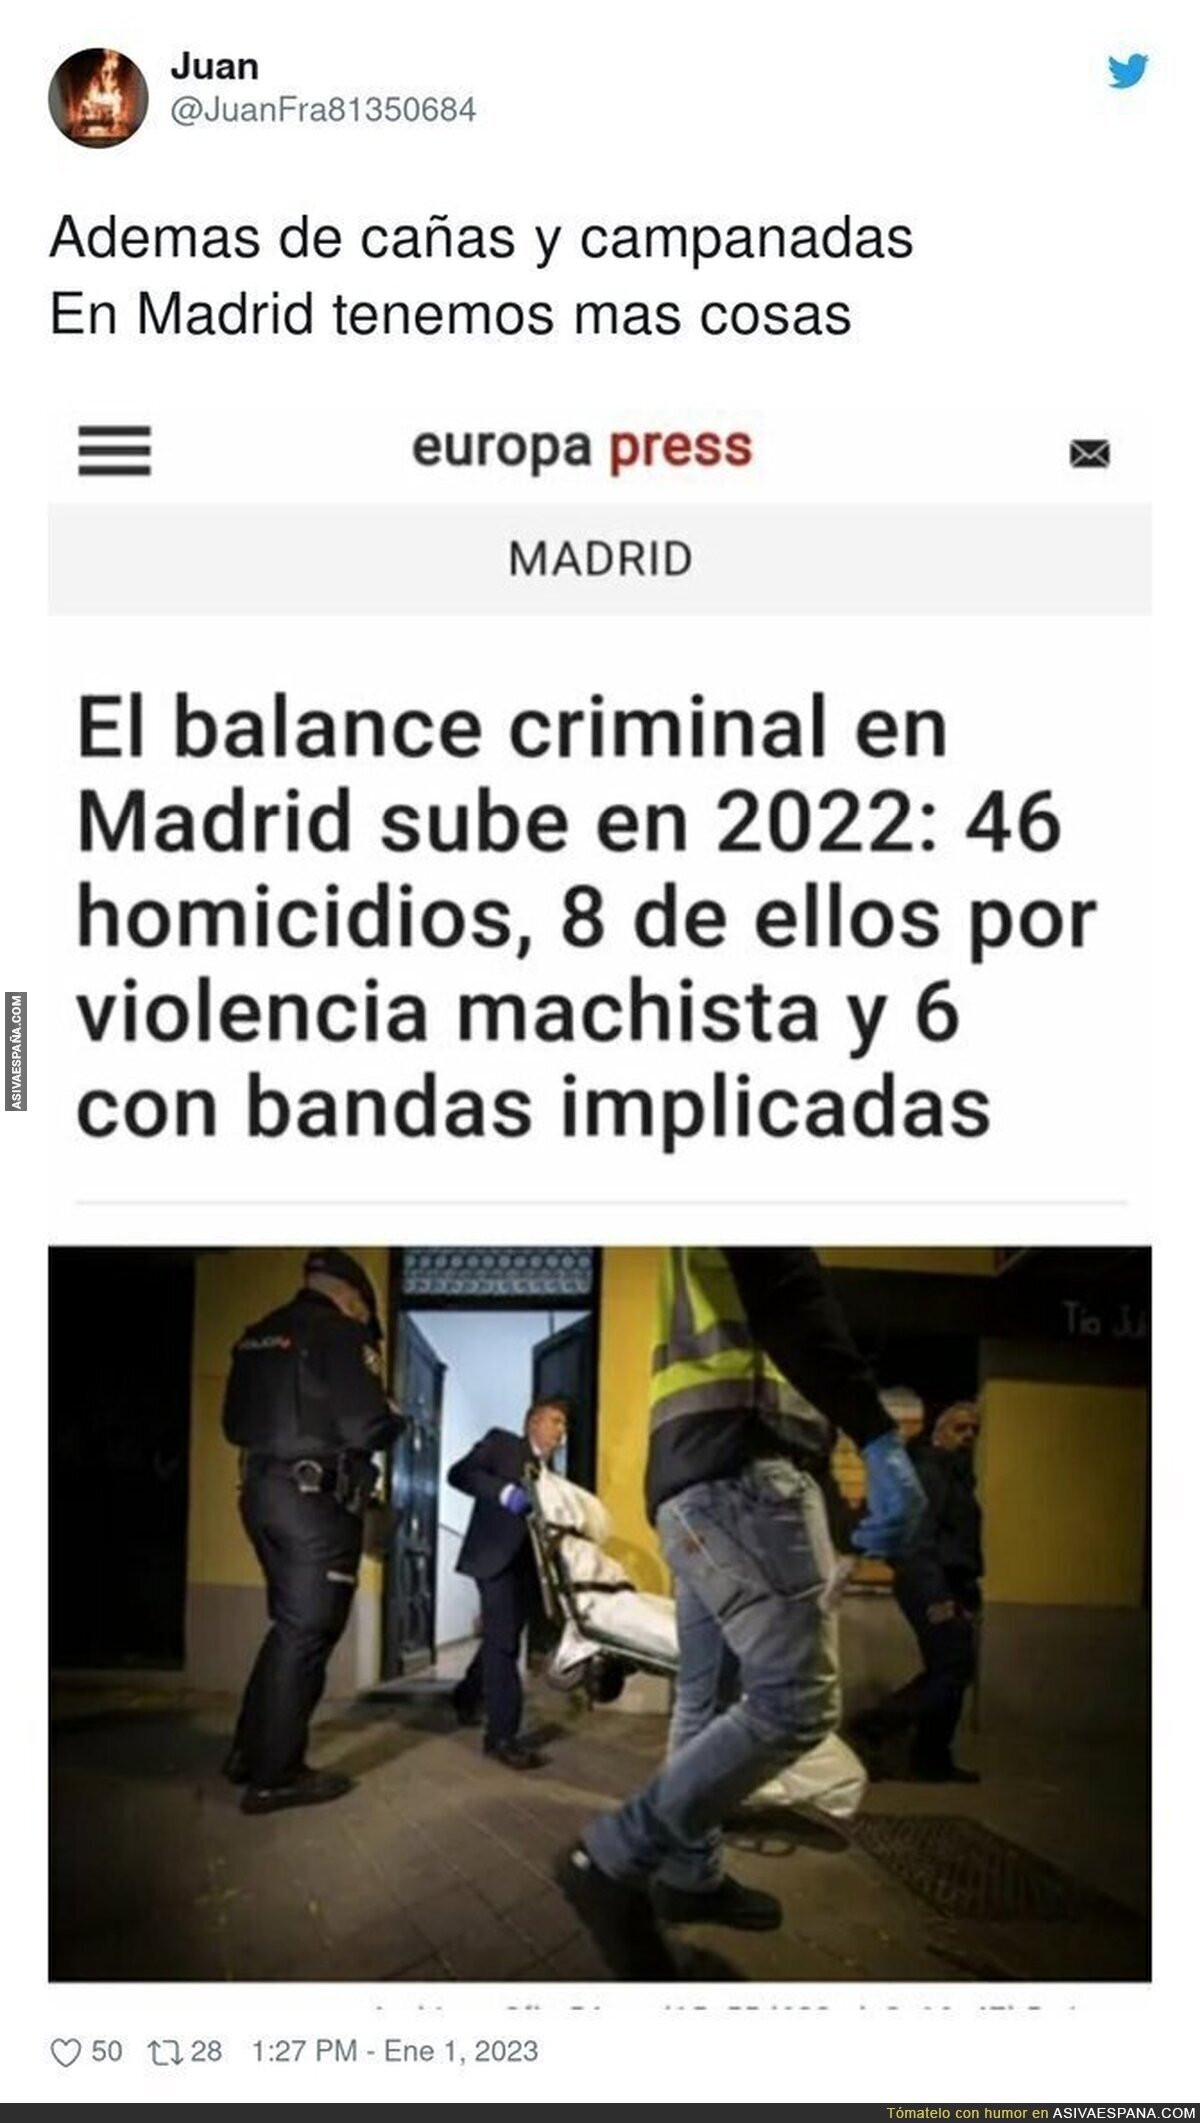 El peligro que hay en Madrid